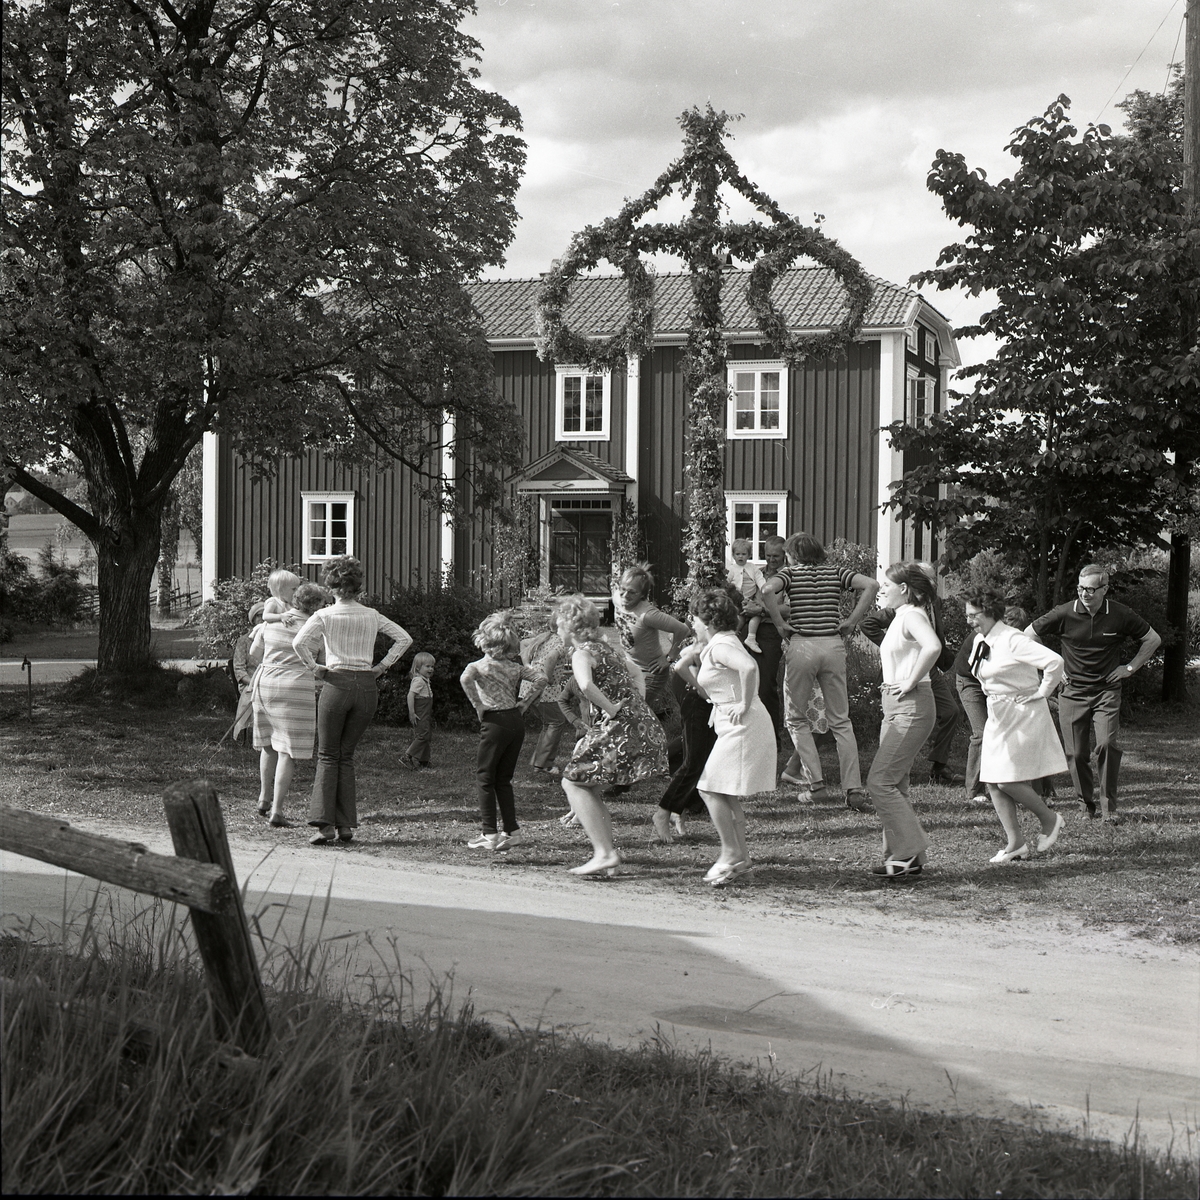 Dom äro verkligen lustiga att se, de som dansar små grodarna runt midsommarstången i Glössbo 1972. Framför bostadshuset och trädgården har midsommarstången rests och ramas in av omkringliggande lövträd med full sommarskrud.